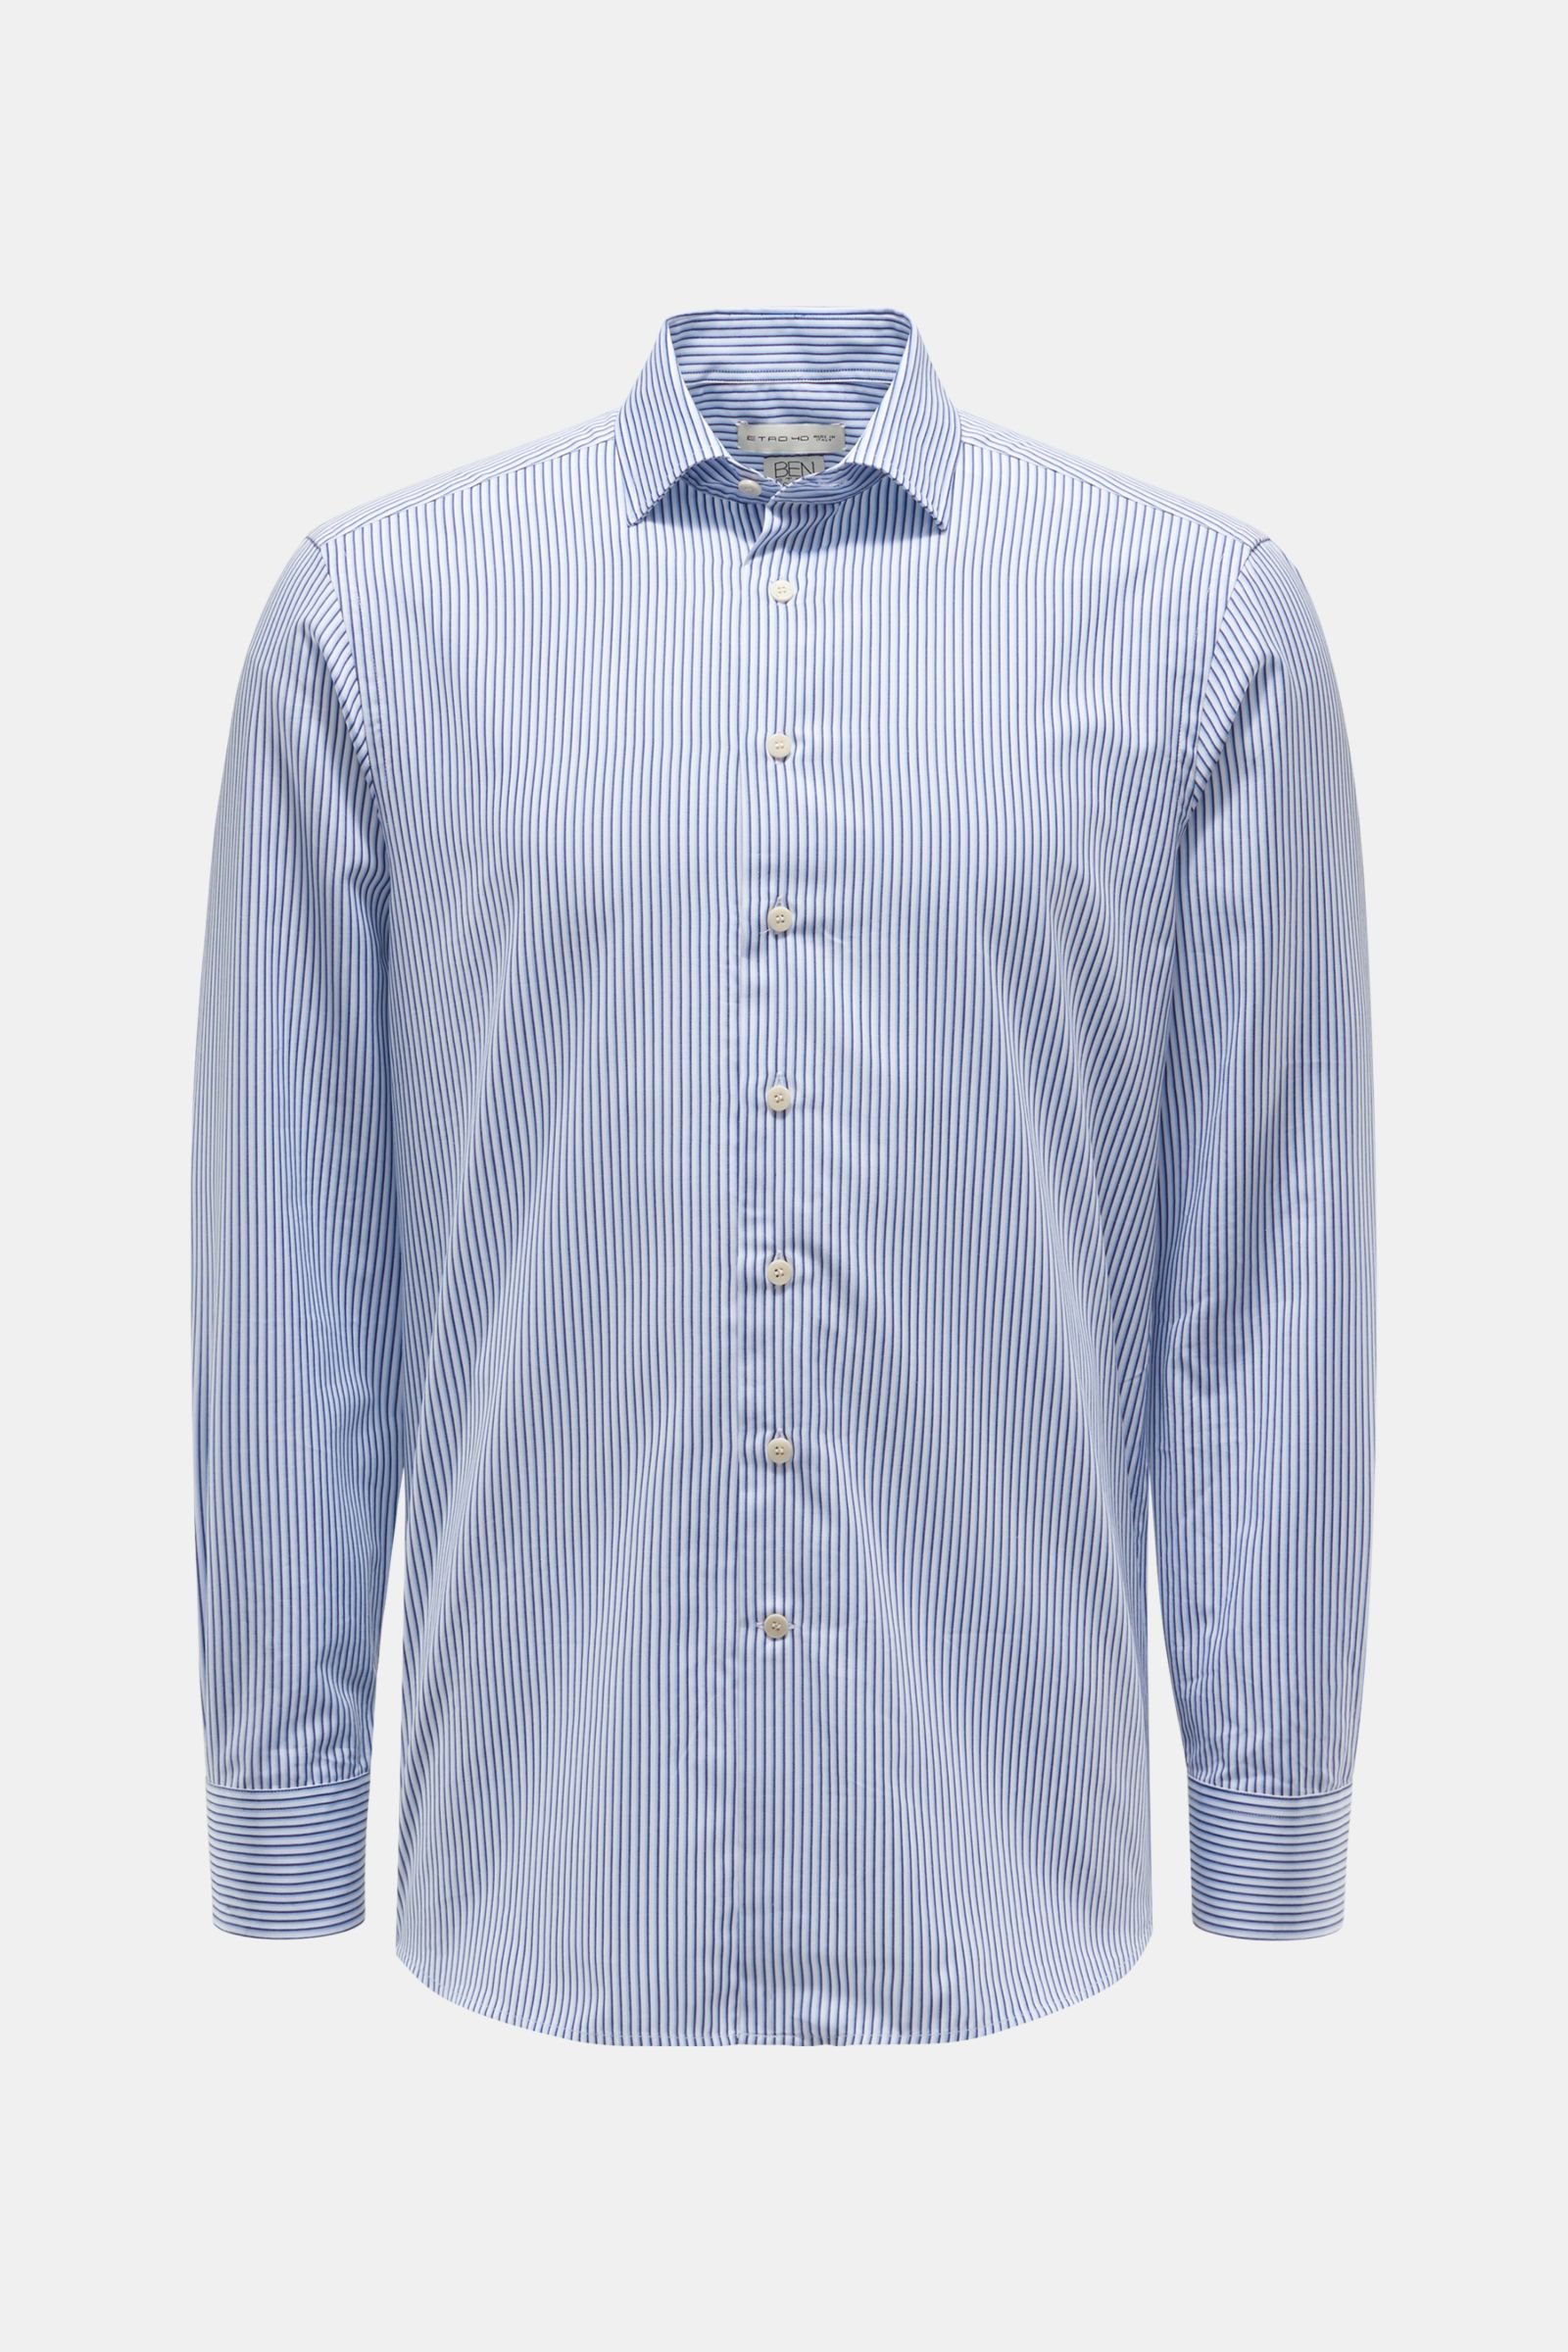 Casual shirt Kent collar light blue/navy striped